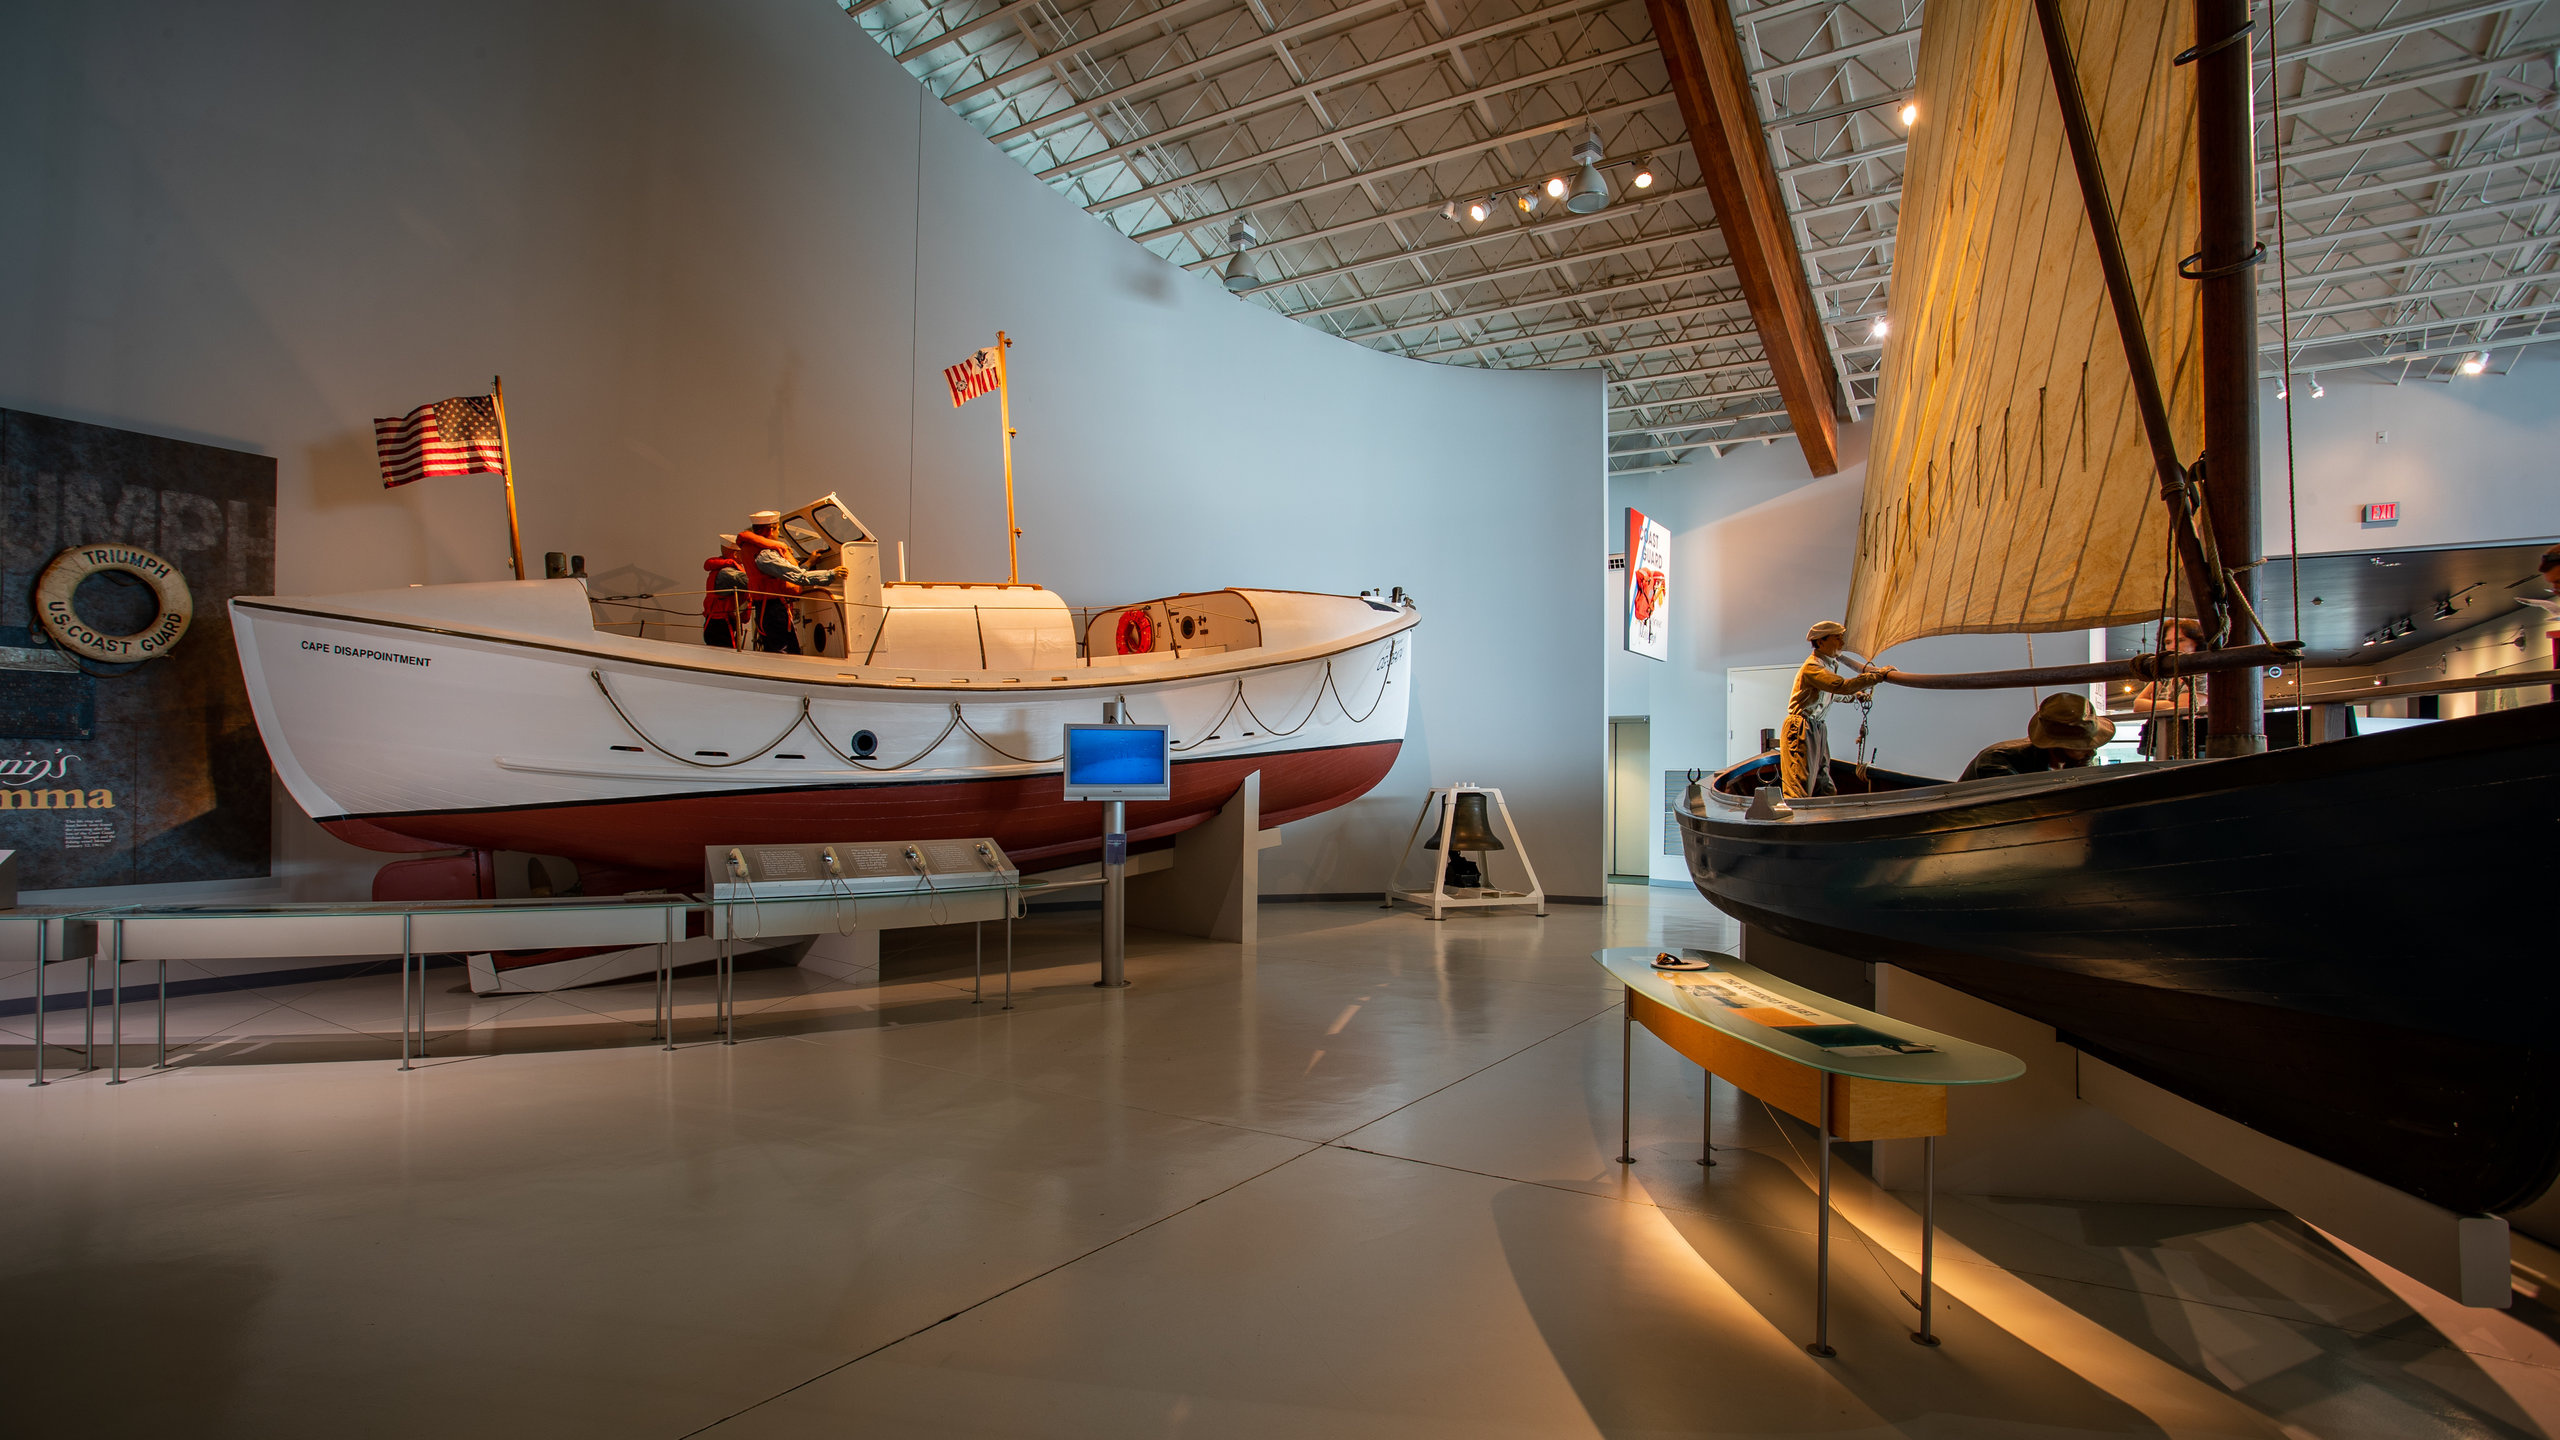 Columbia River Maritime Museum, Astoria vacation rentals, House rentals, Oregon coast, 2560x1440 HD Desktop